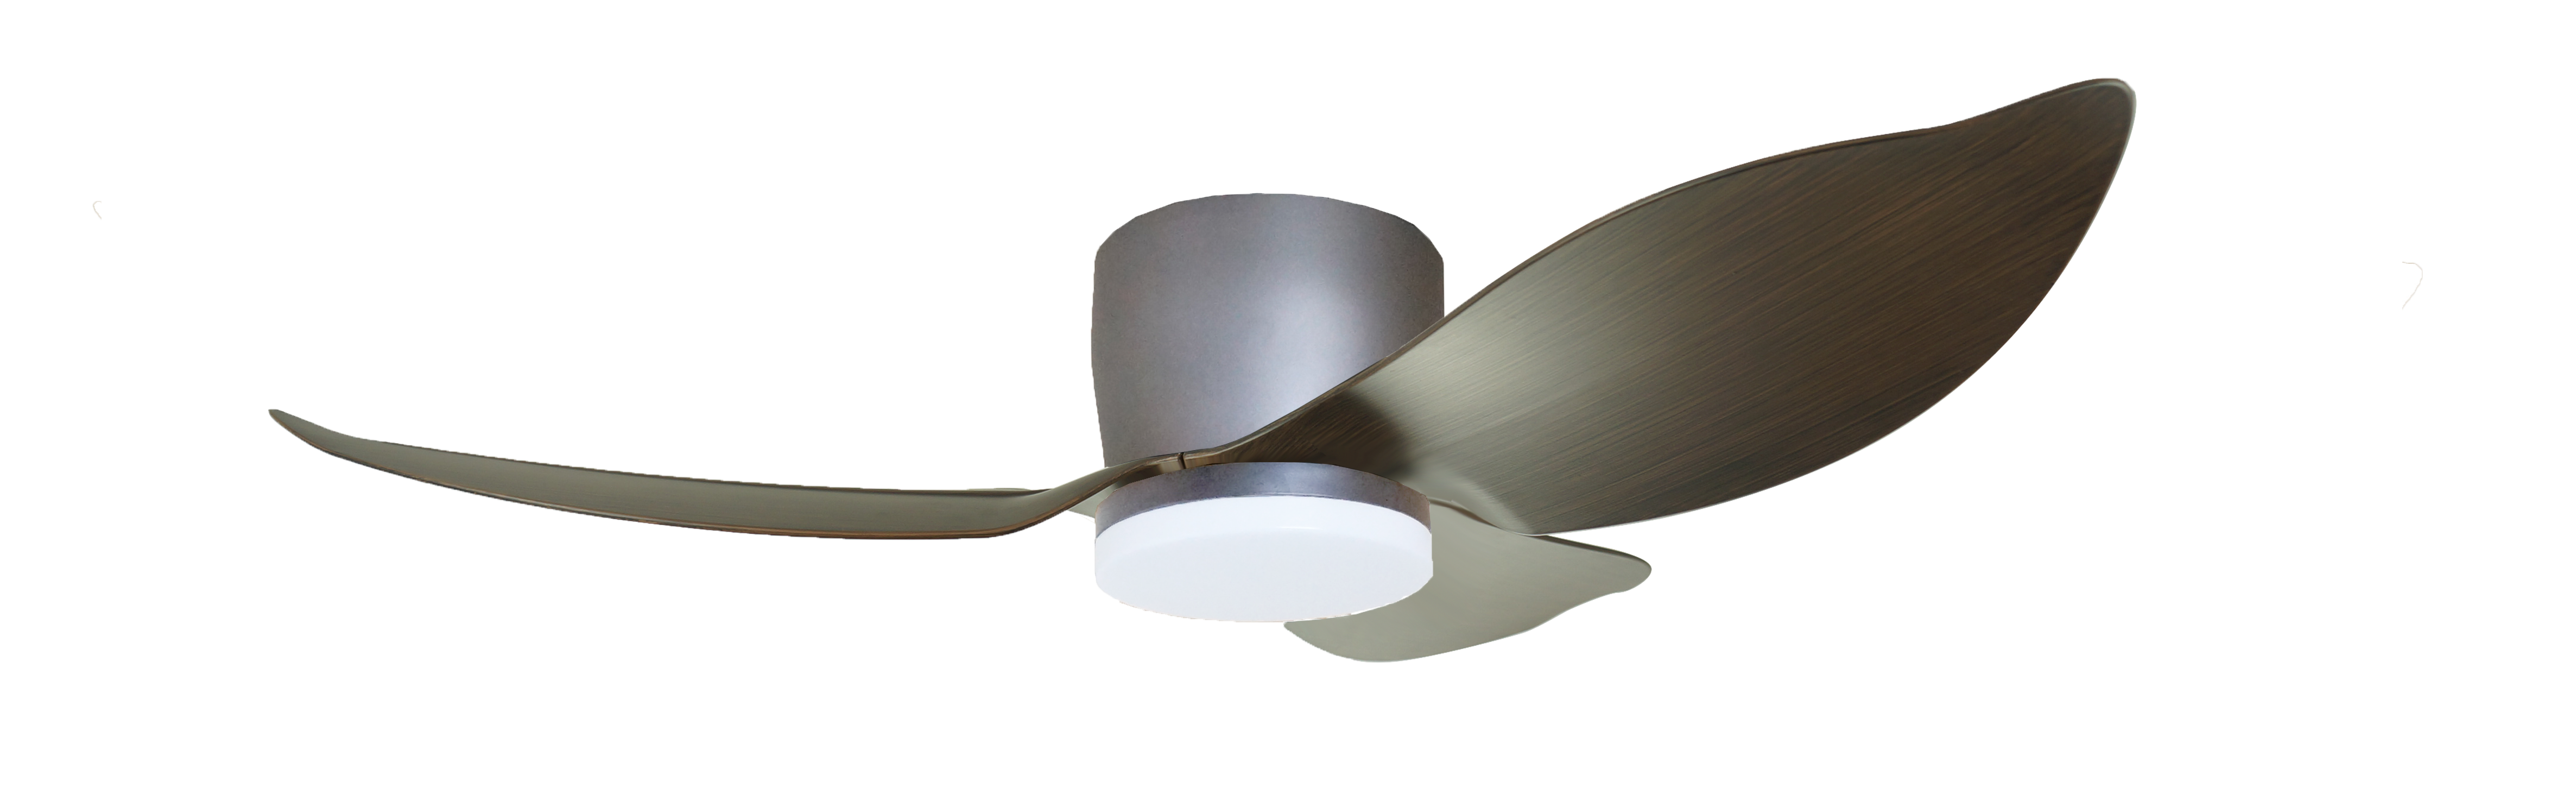 Disfruta de brisas suaves e iluminación ambiental con este ventilador de techo inspirado en la naturaleza de 46 pulgadas